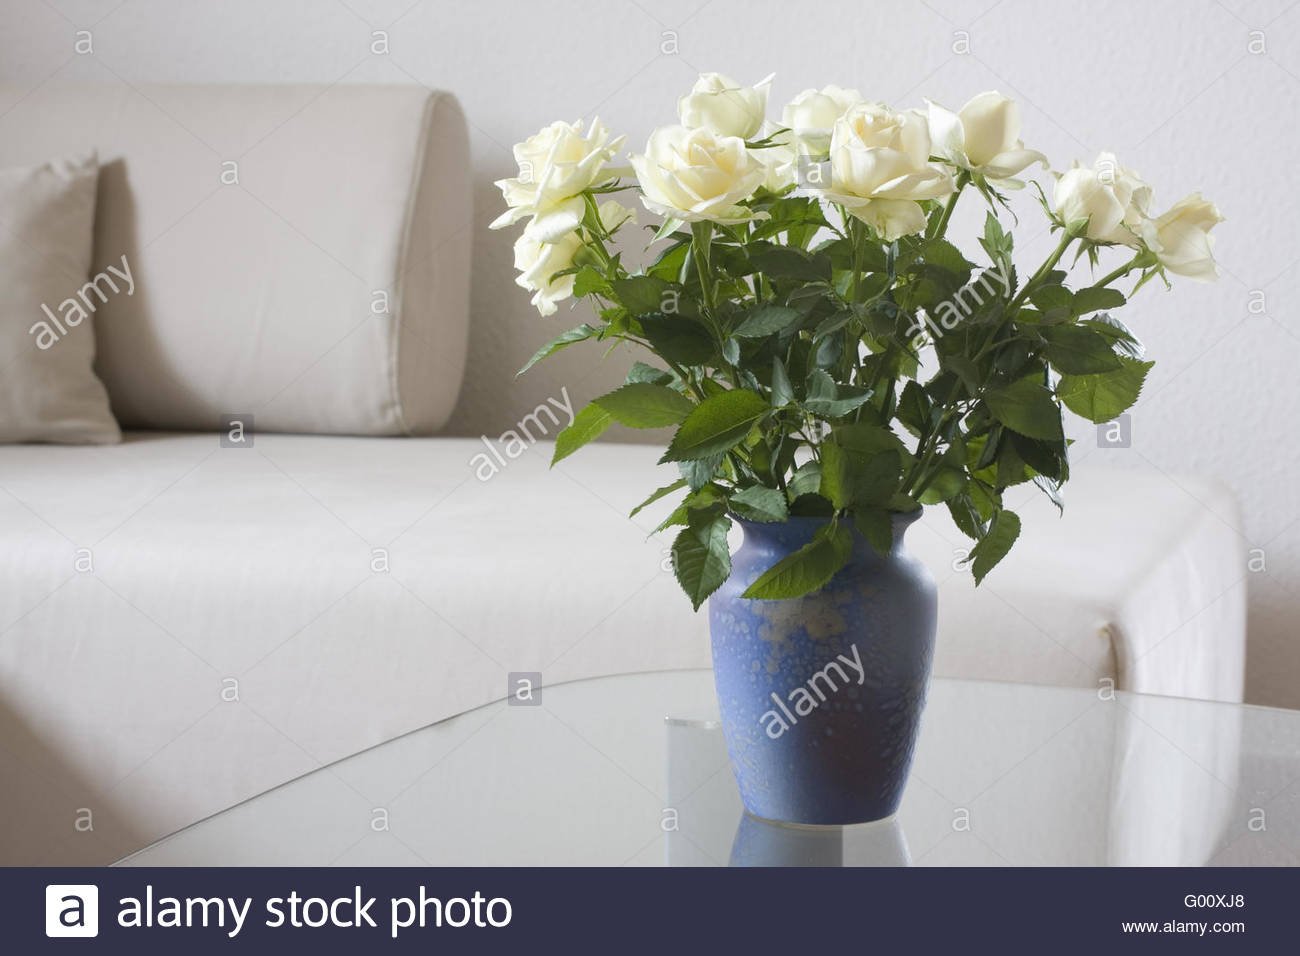 Как дольше сохранить срезанные розы в вазе. Розы в вазе. Белые розы в комнате. Белые розы на подоконнике. Цветы в белой комнате.